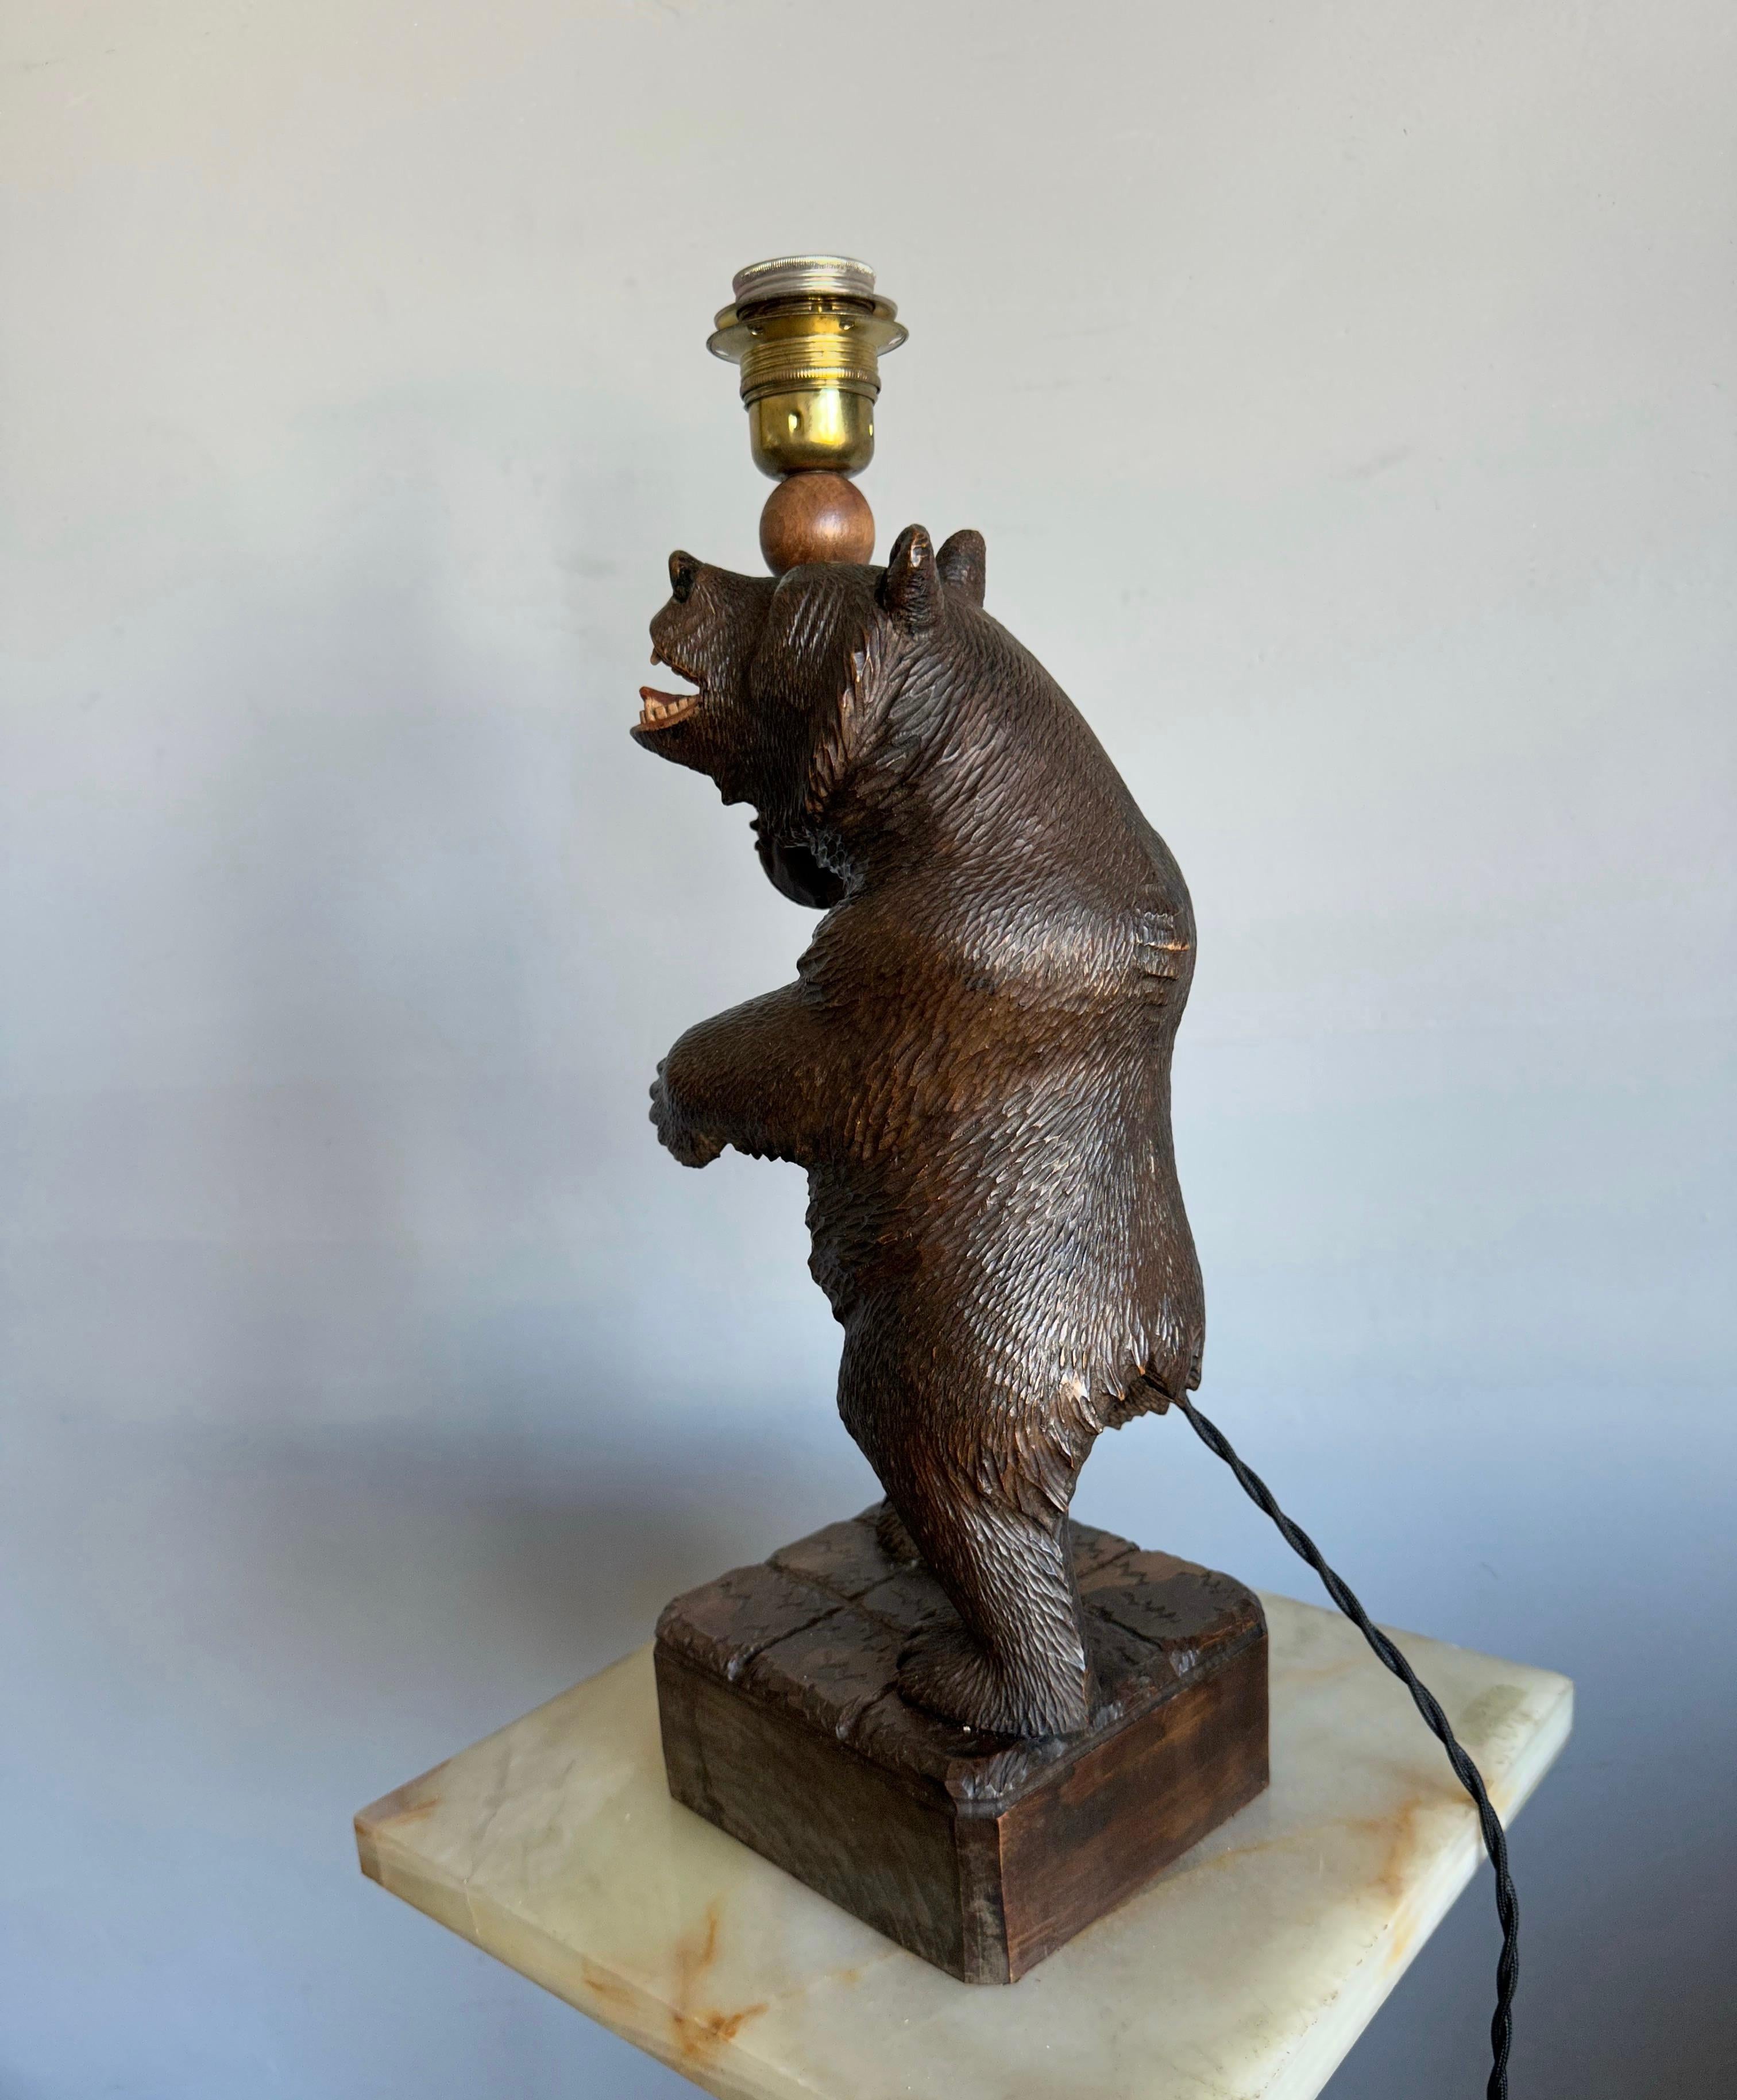 Schöne Qualität und perfekten Zustand Bär Schreibtischlampe. 

Wenn Sie ein Sammler von seltenen, sehr hochwertigen und hochdekorativen Schwarzwaldbären-Skulpturen sind, dann könnte dieses schöne Exemplar bald zu Ihnen fliegen. Dieser perfekt